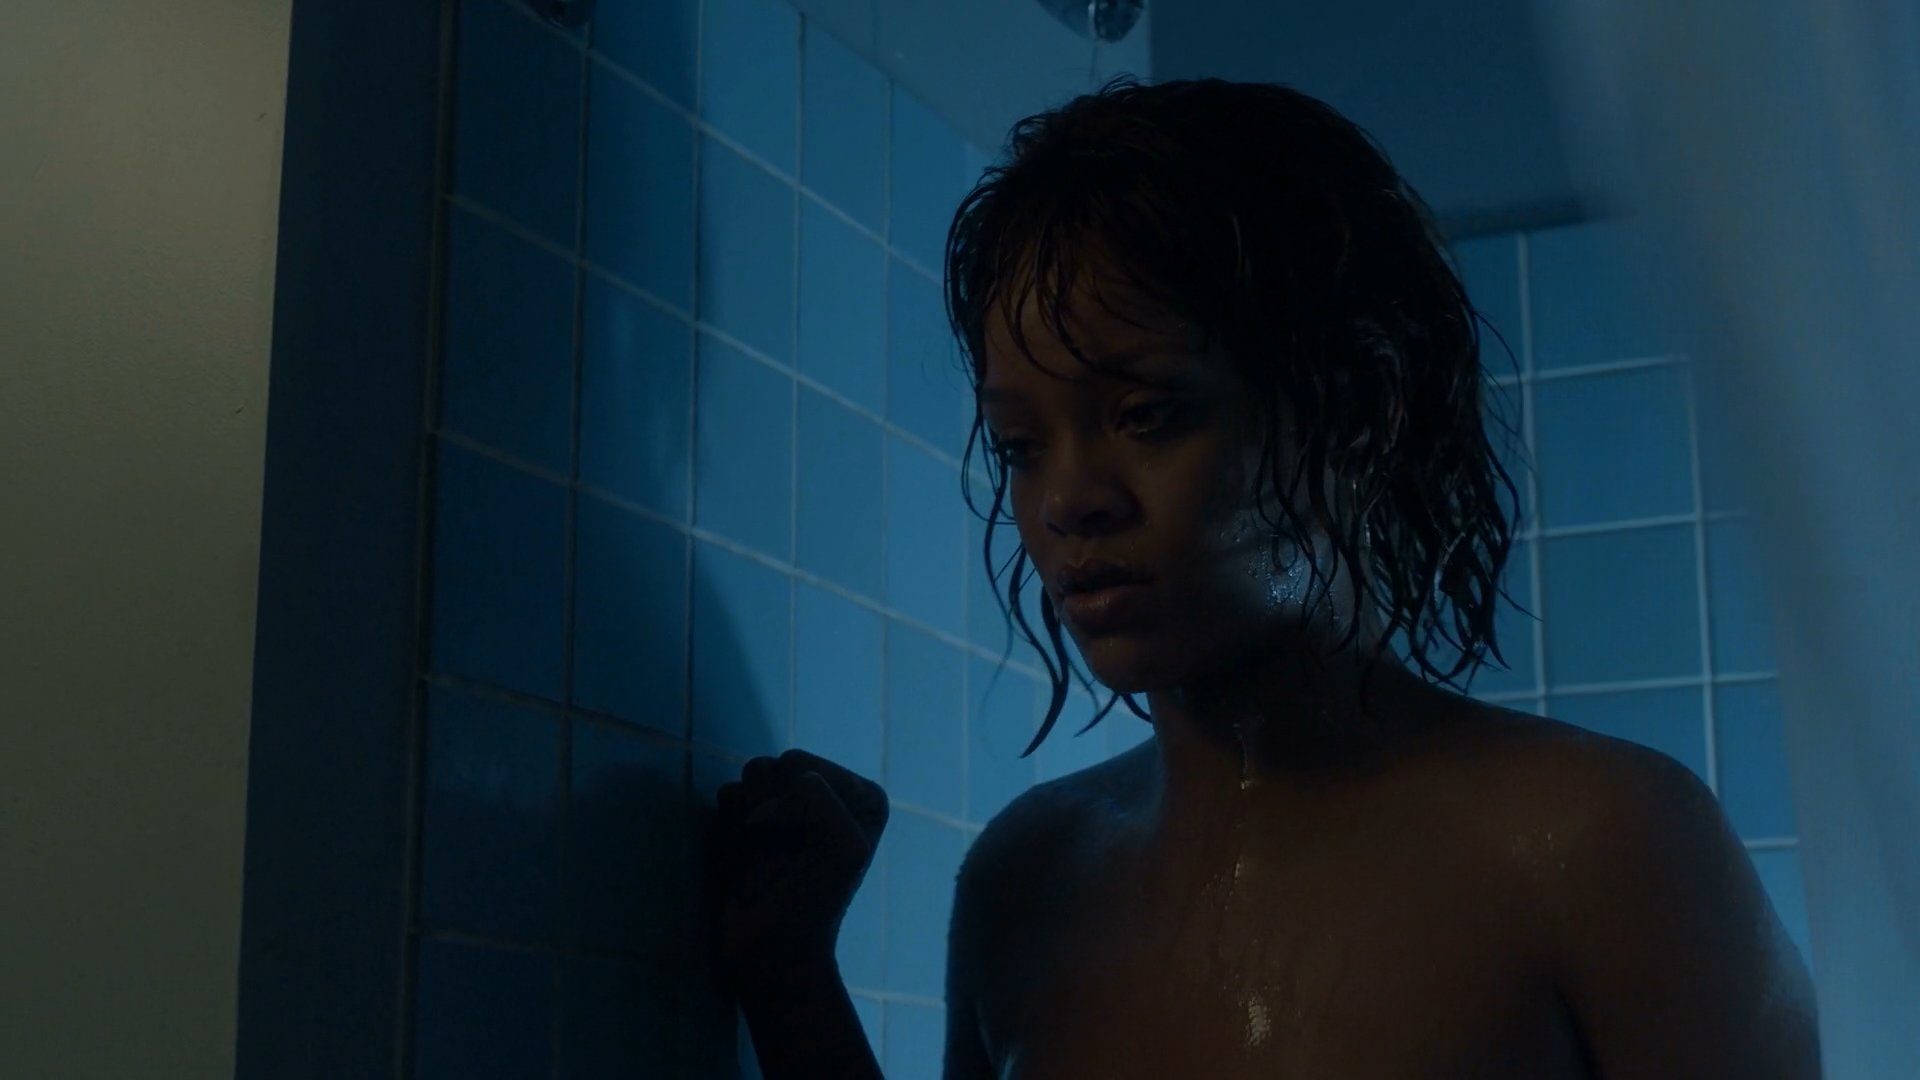 Rihanna Sexy Bates Motel 2017 S05e06 Hd 1080p Thefappening